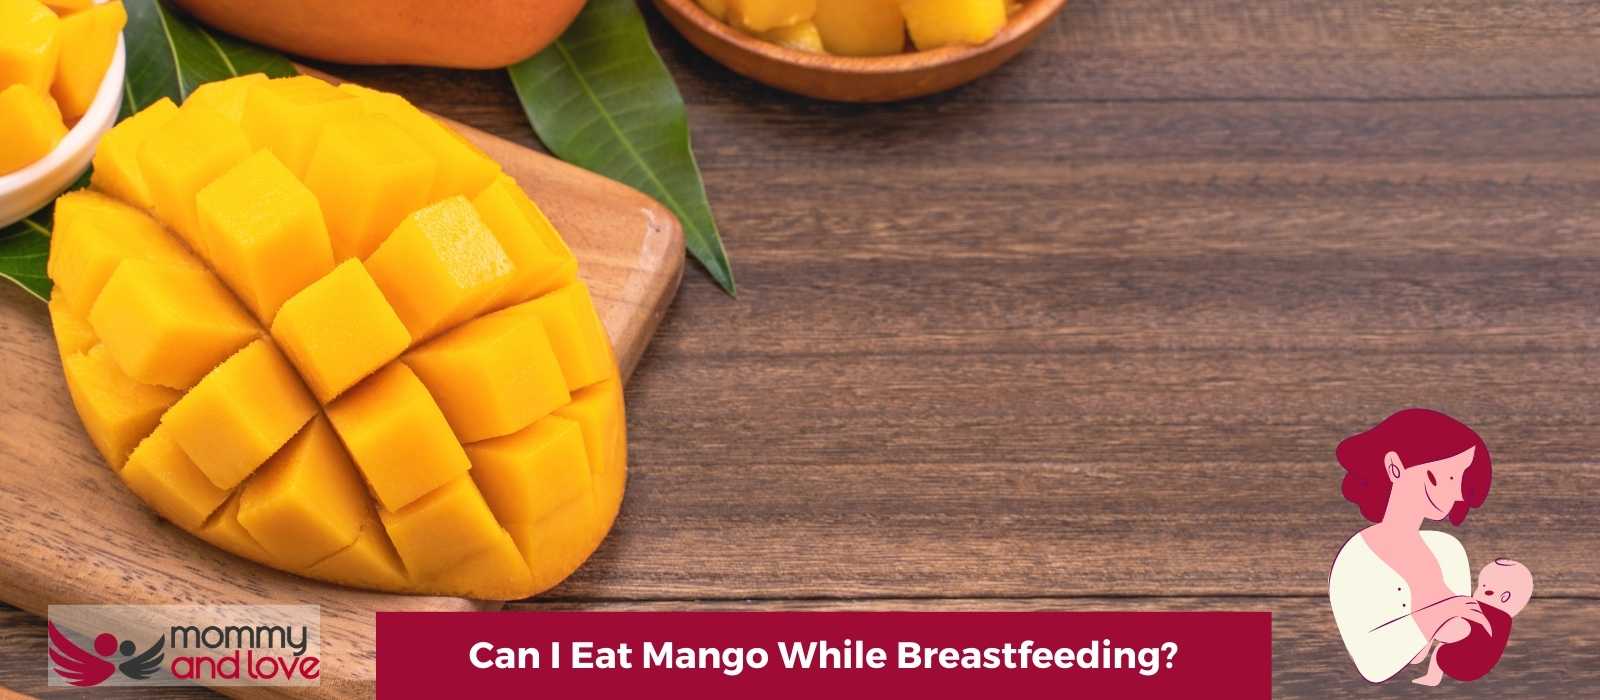 Can I Eat Mango While Breastfeeding?